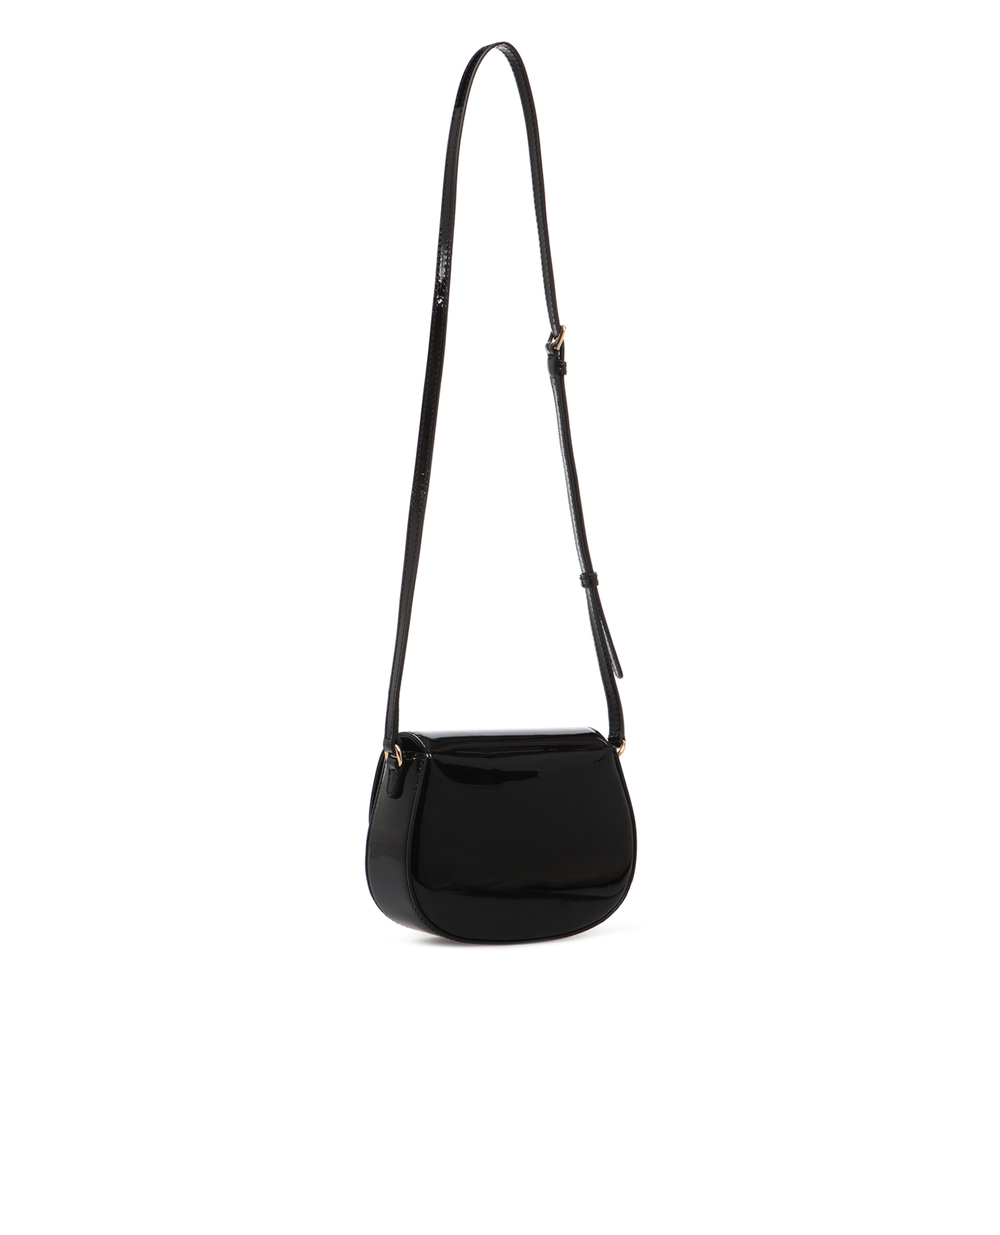 Кожаная сумка Dolce&Gabbana EB0212-A1471-, черный цвет • Купить в интернет-магазине Kameron